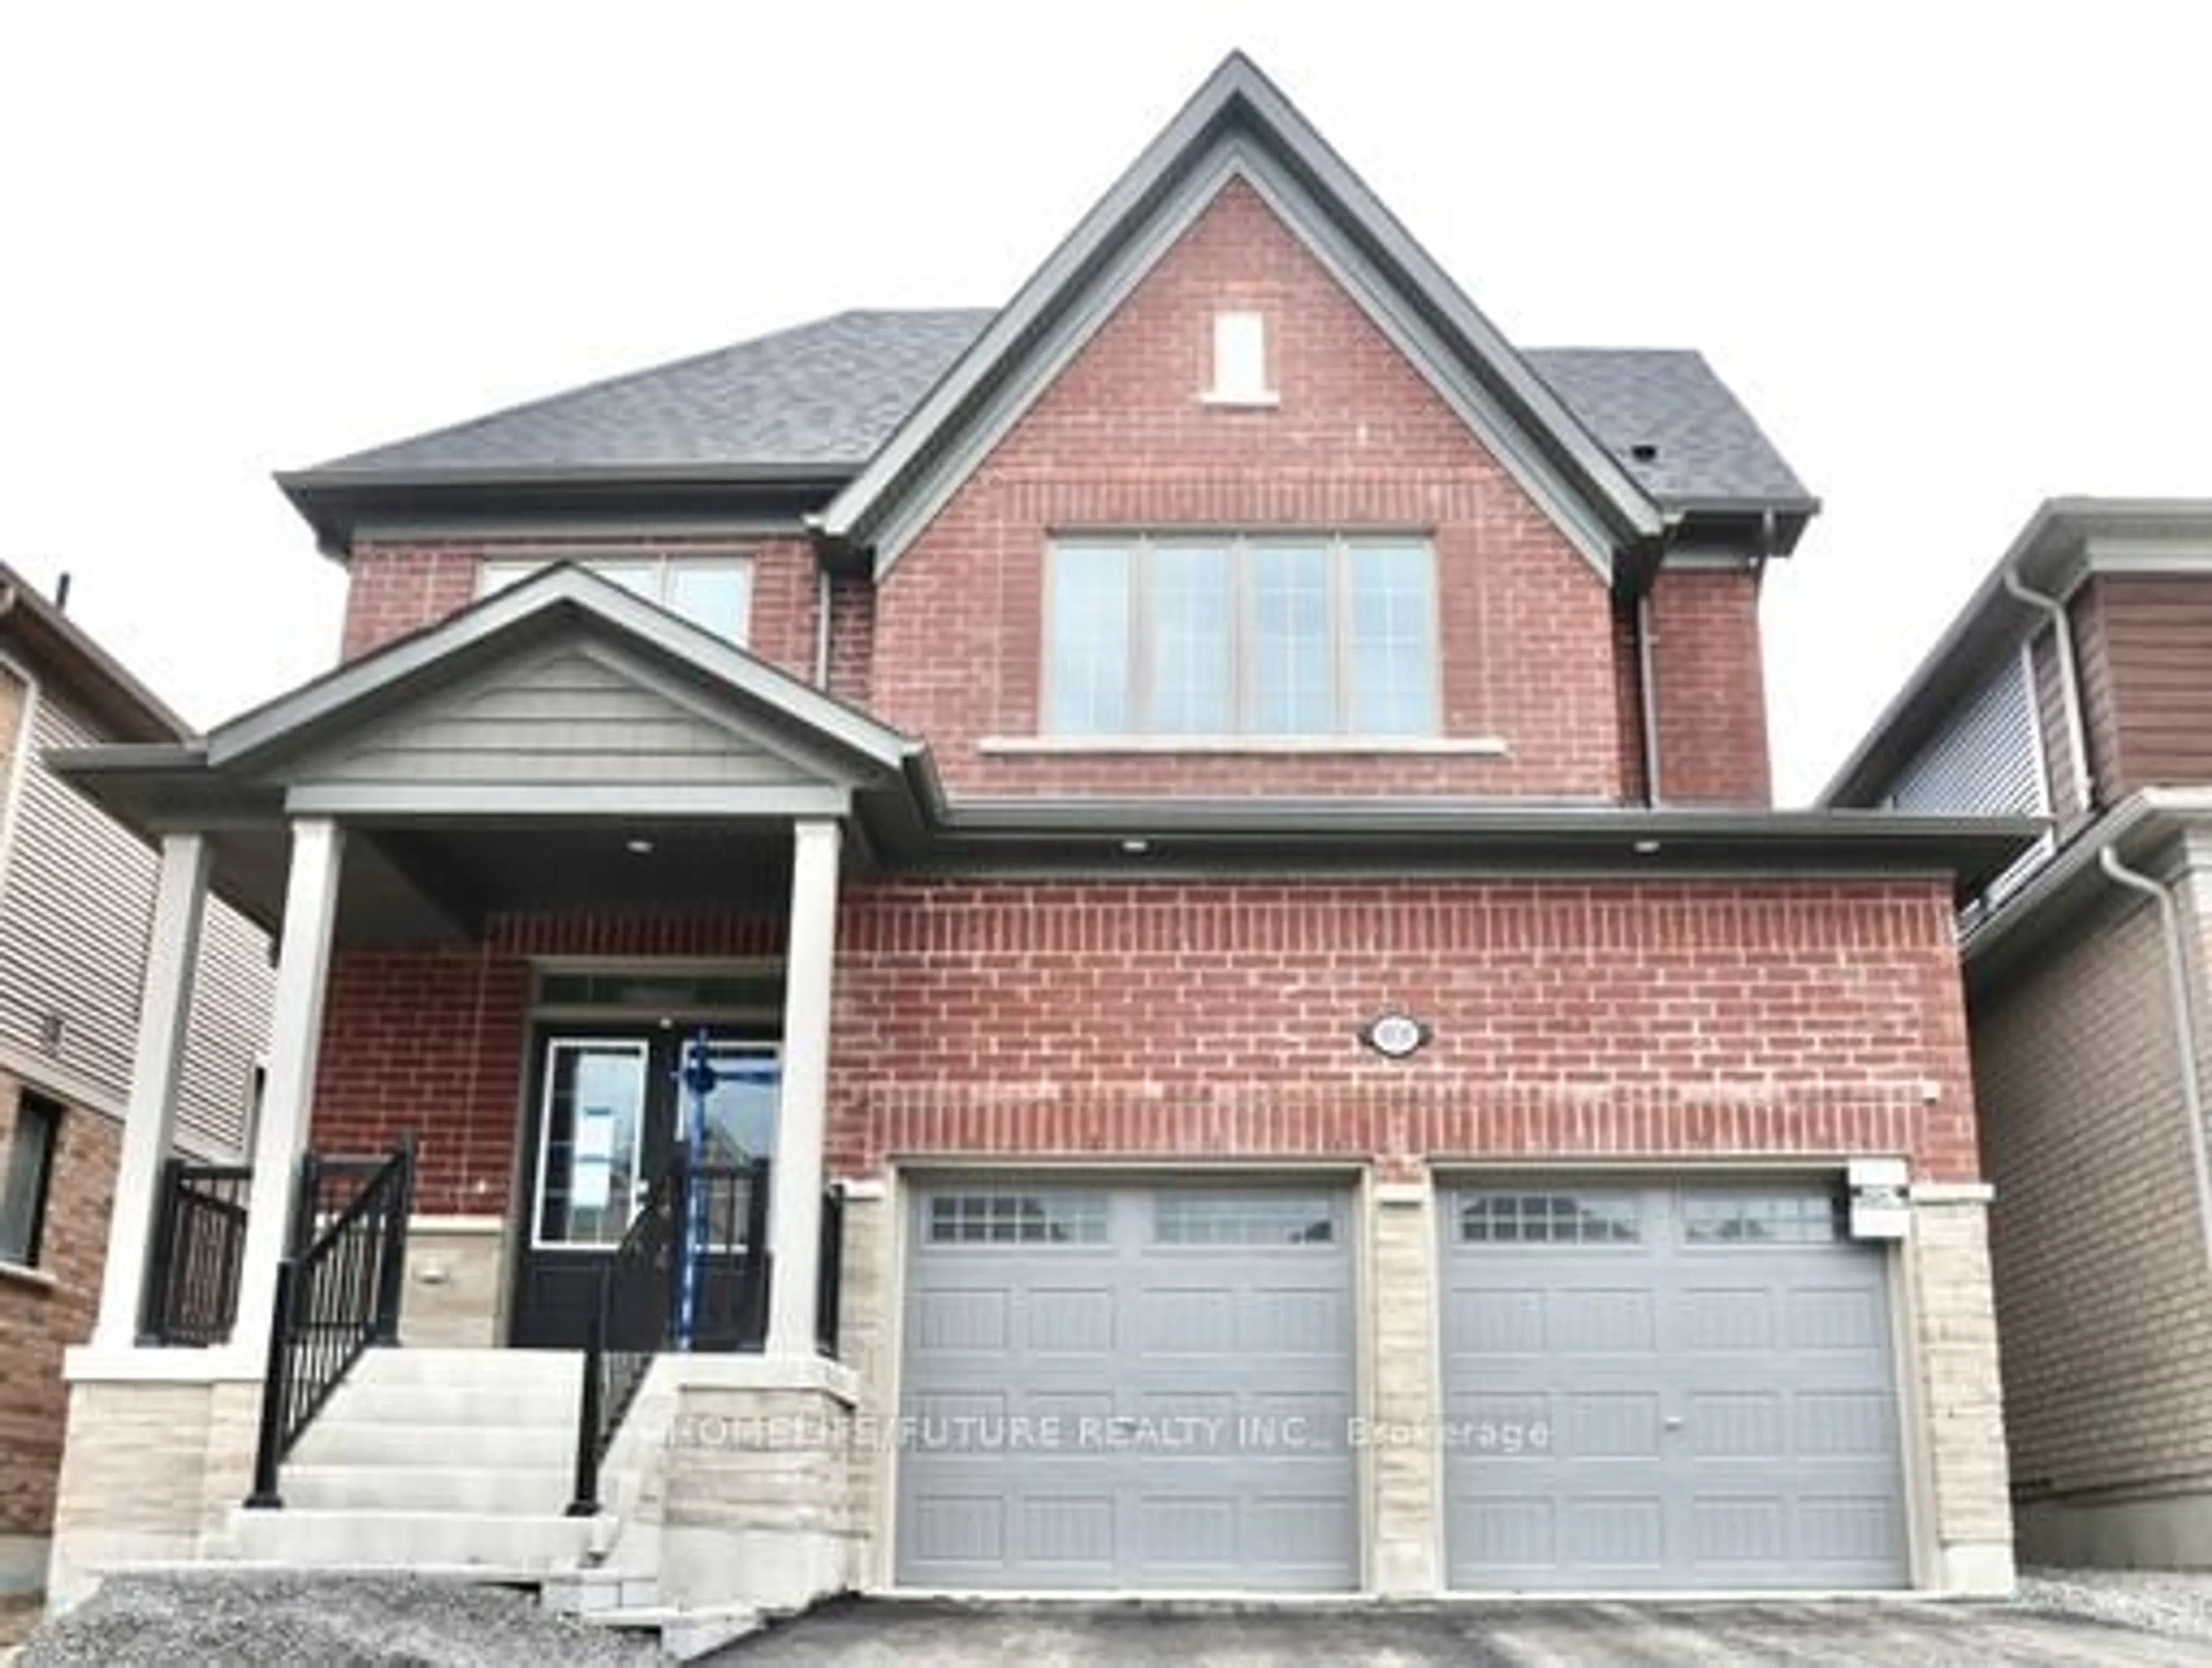 Home with brick exterior material for 1034 DENTON Dr, Cobourg Ontario K9A 5K2